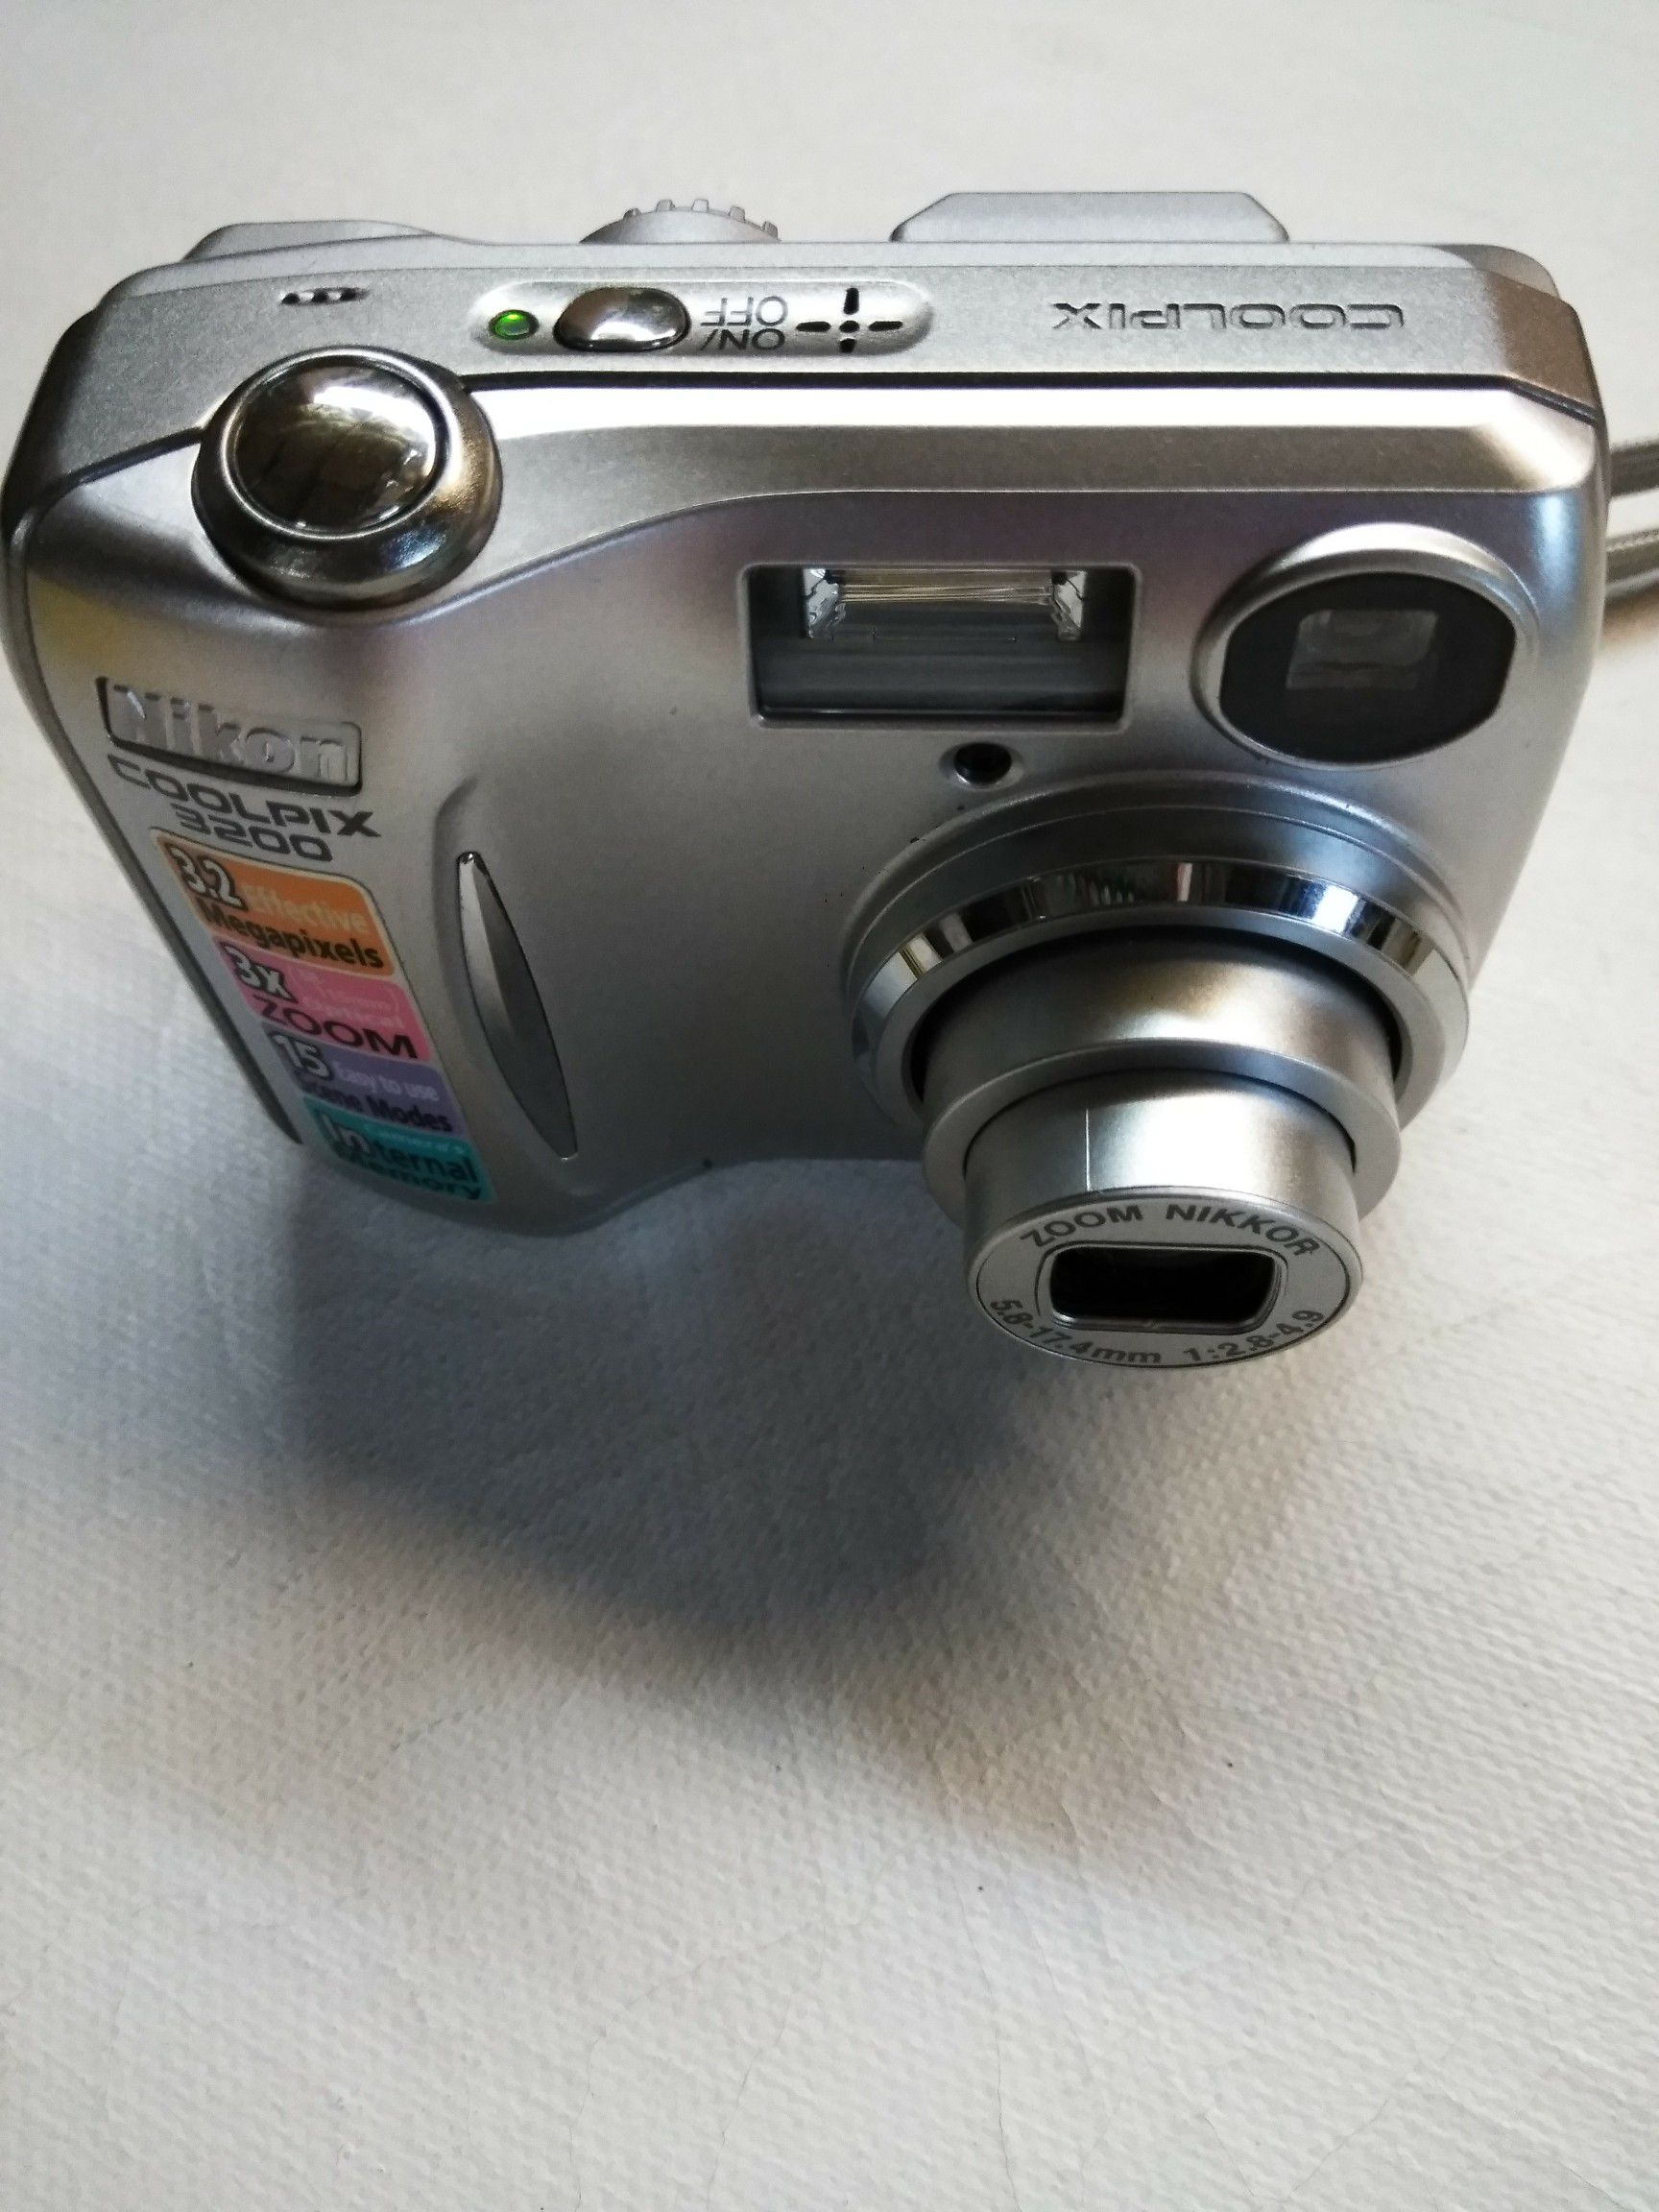 Nikon Coolpix 2200 digital camera